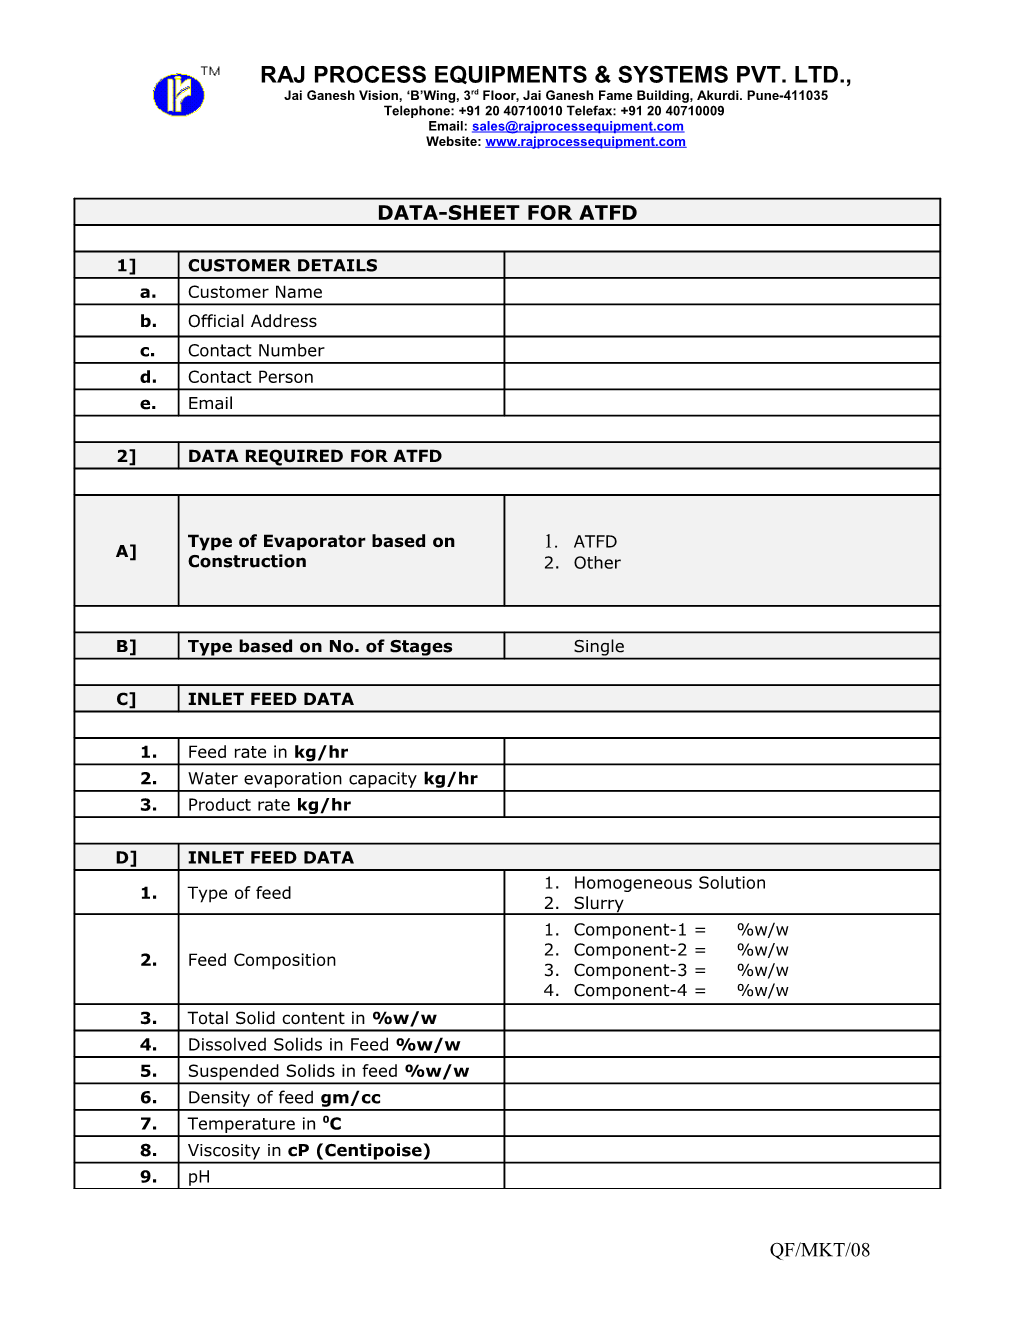 Data-Sheet for Evaporator